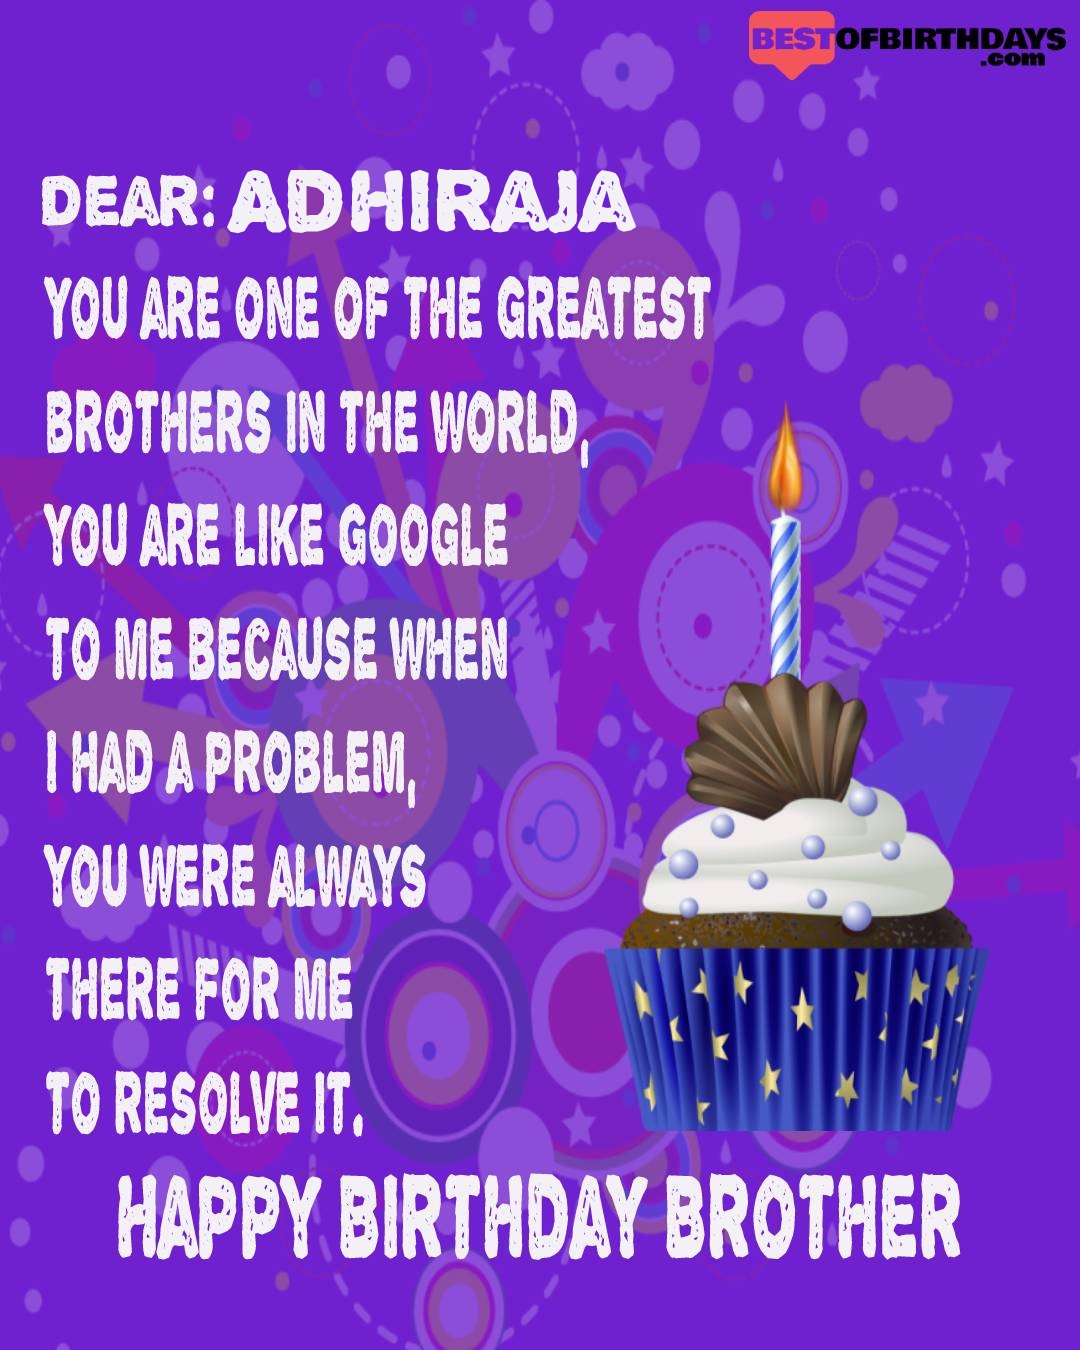 Happy birthday adhiraja bhai brother bro